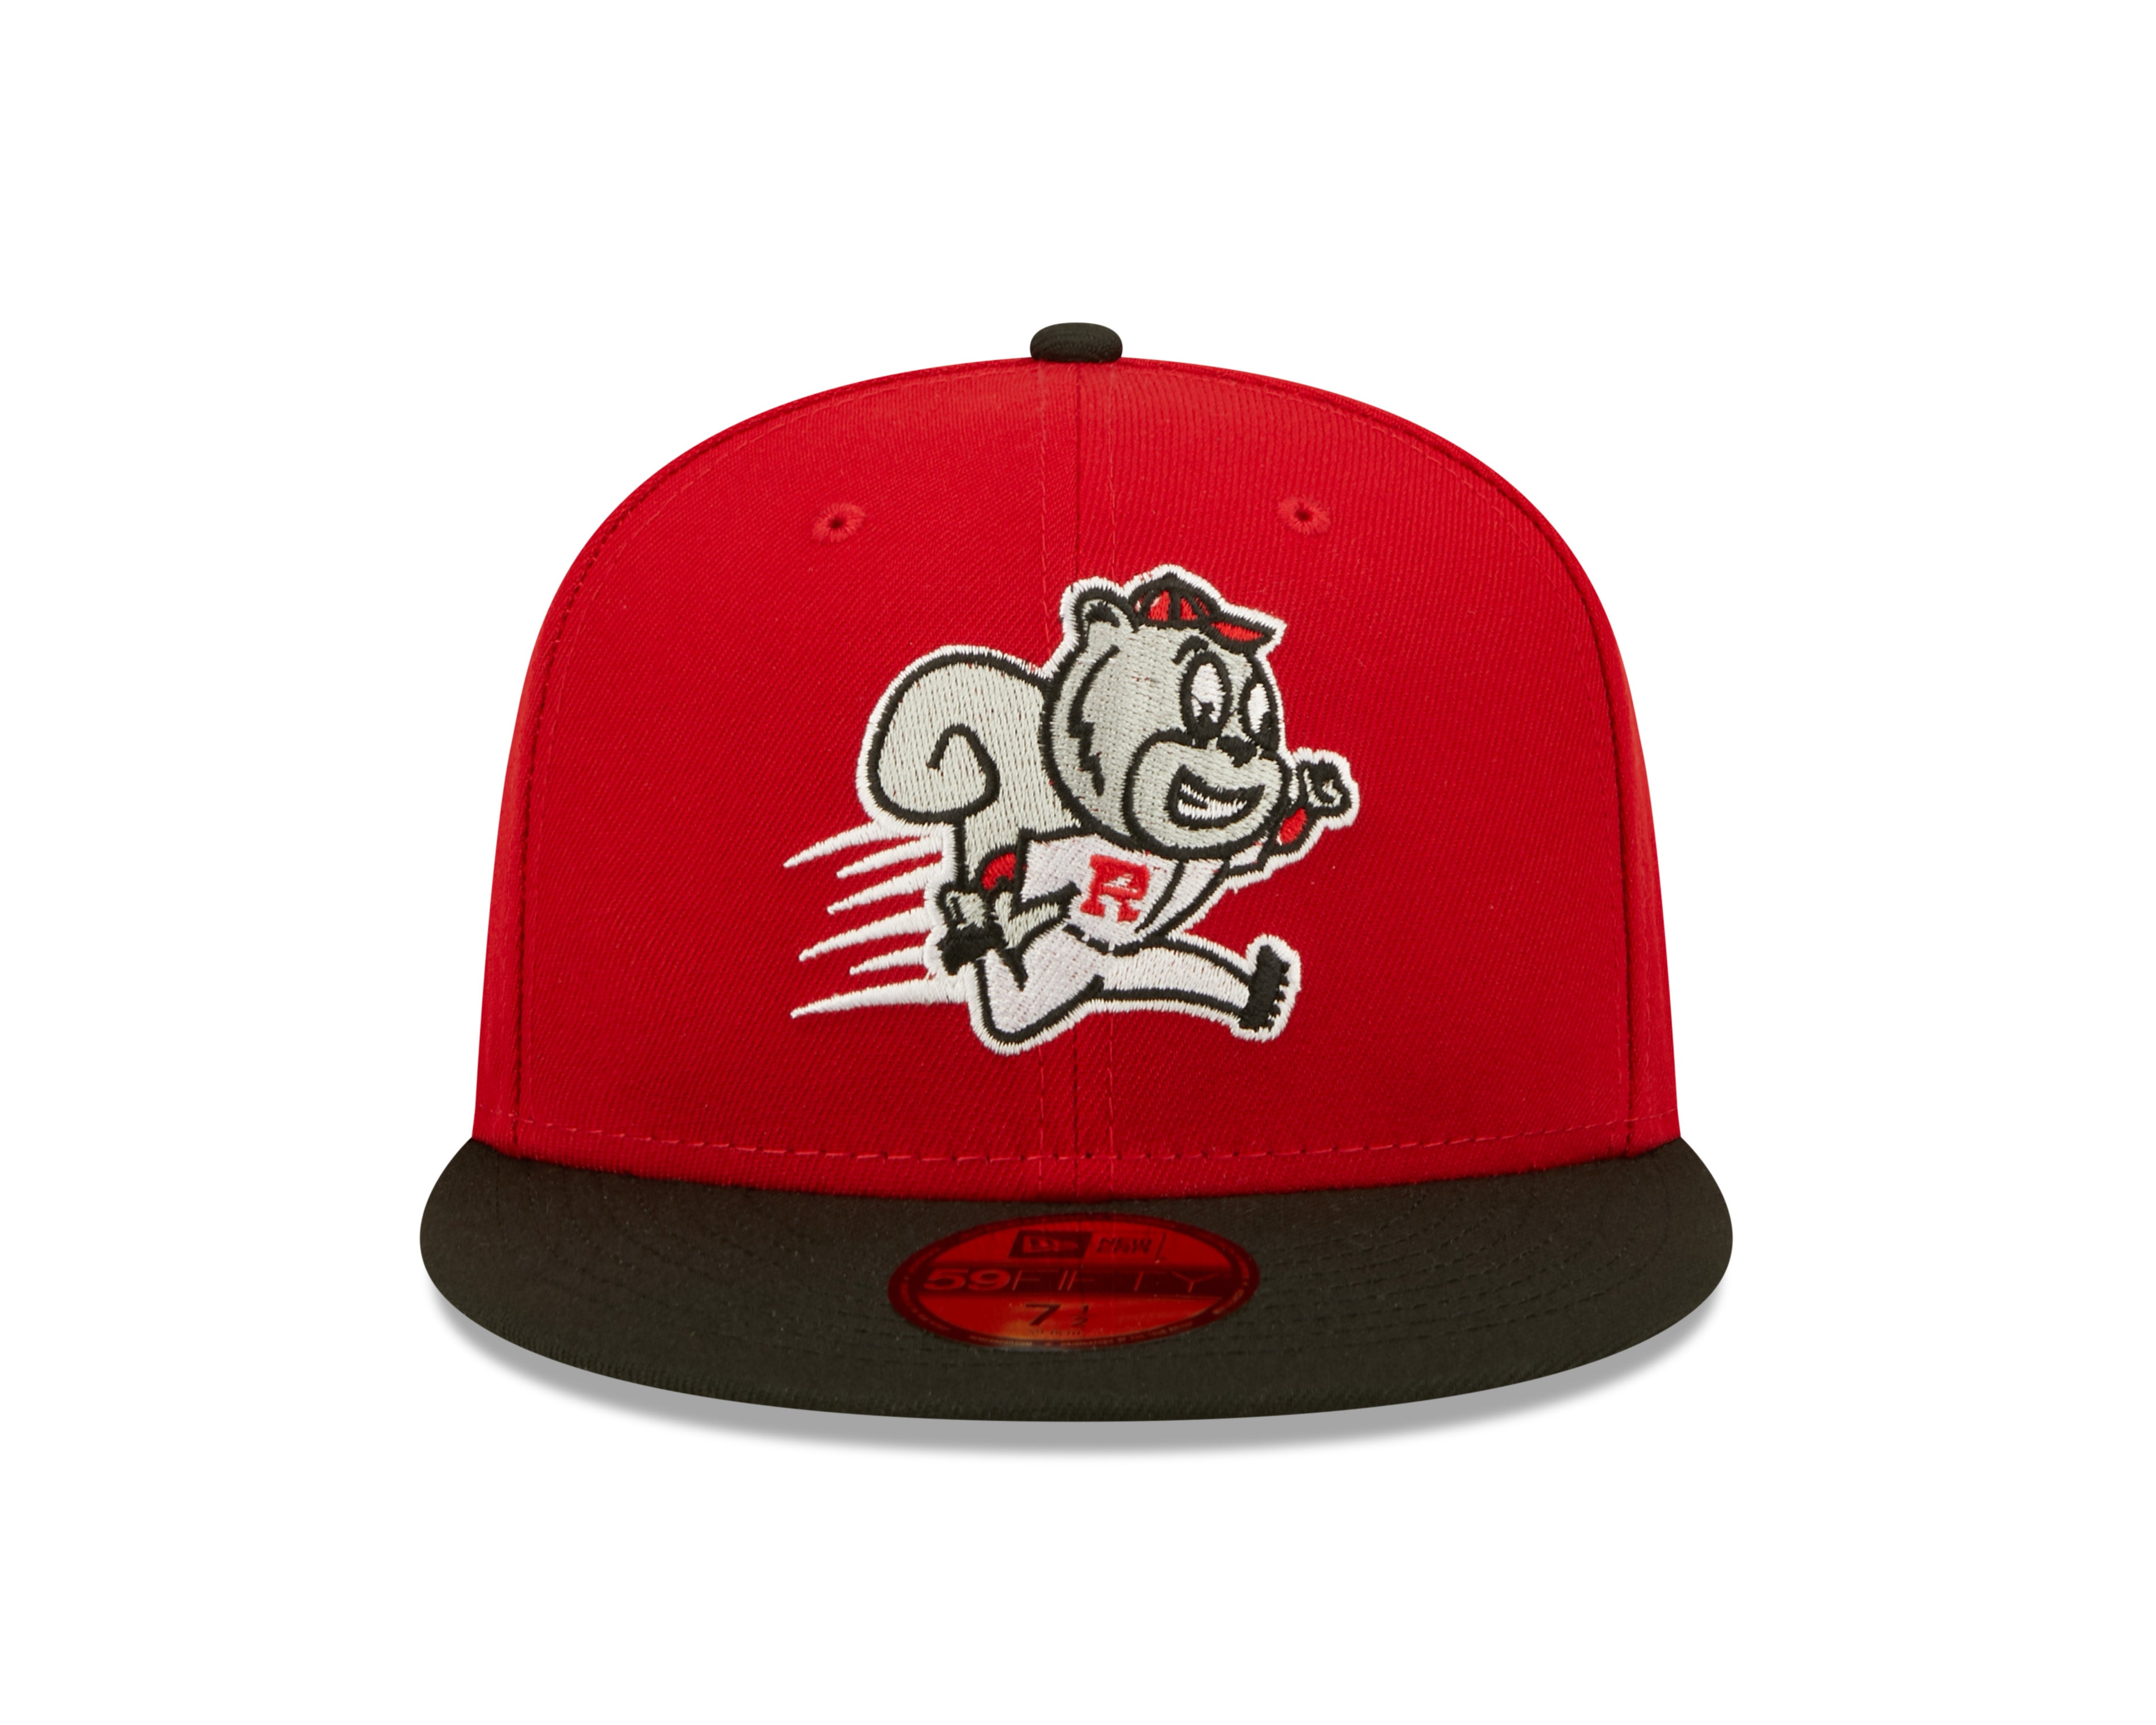 New Era 59Fifty Cincinnati Reds Mascot Black Mr. Red Fitted Hat Cap 7 3/8